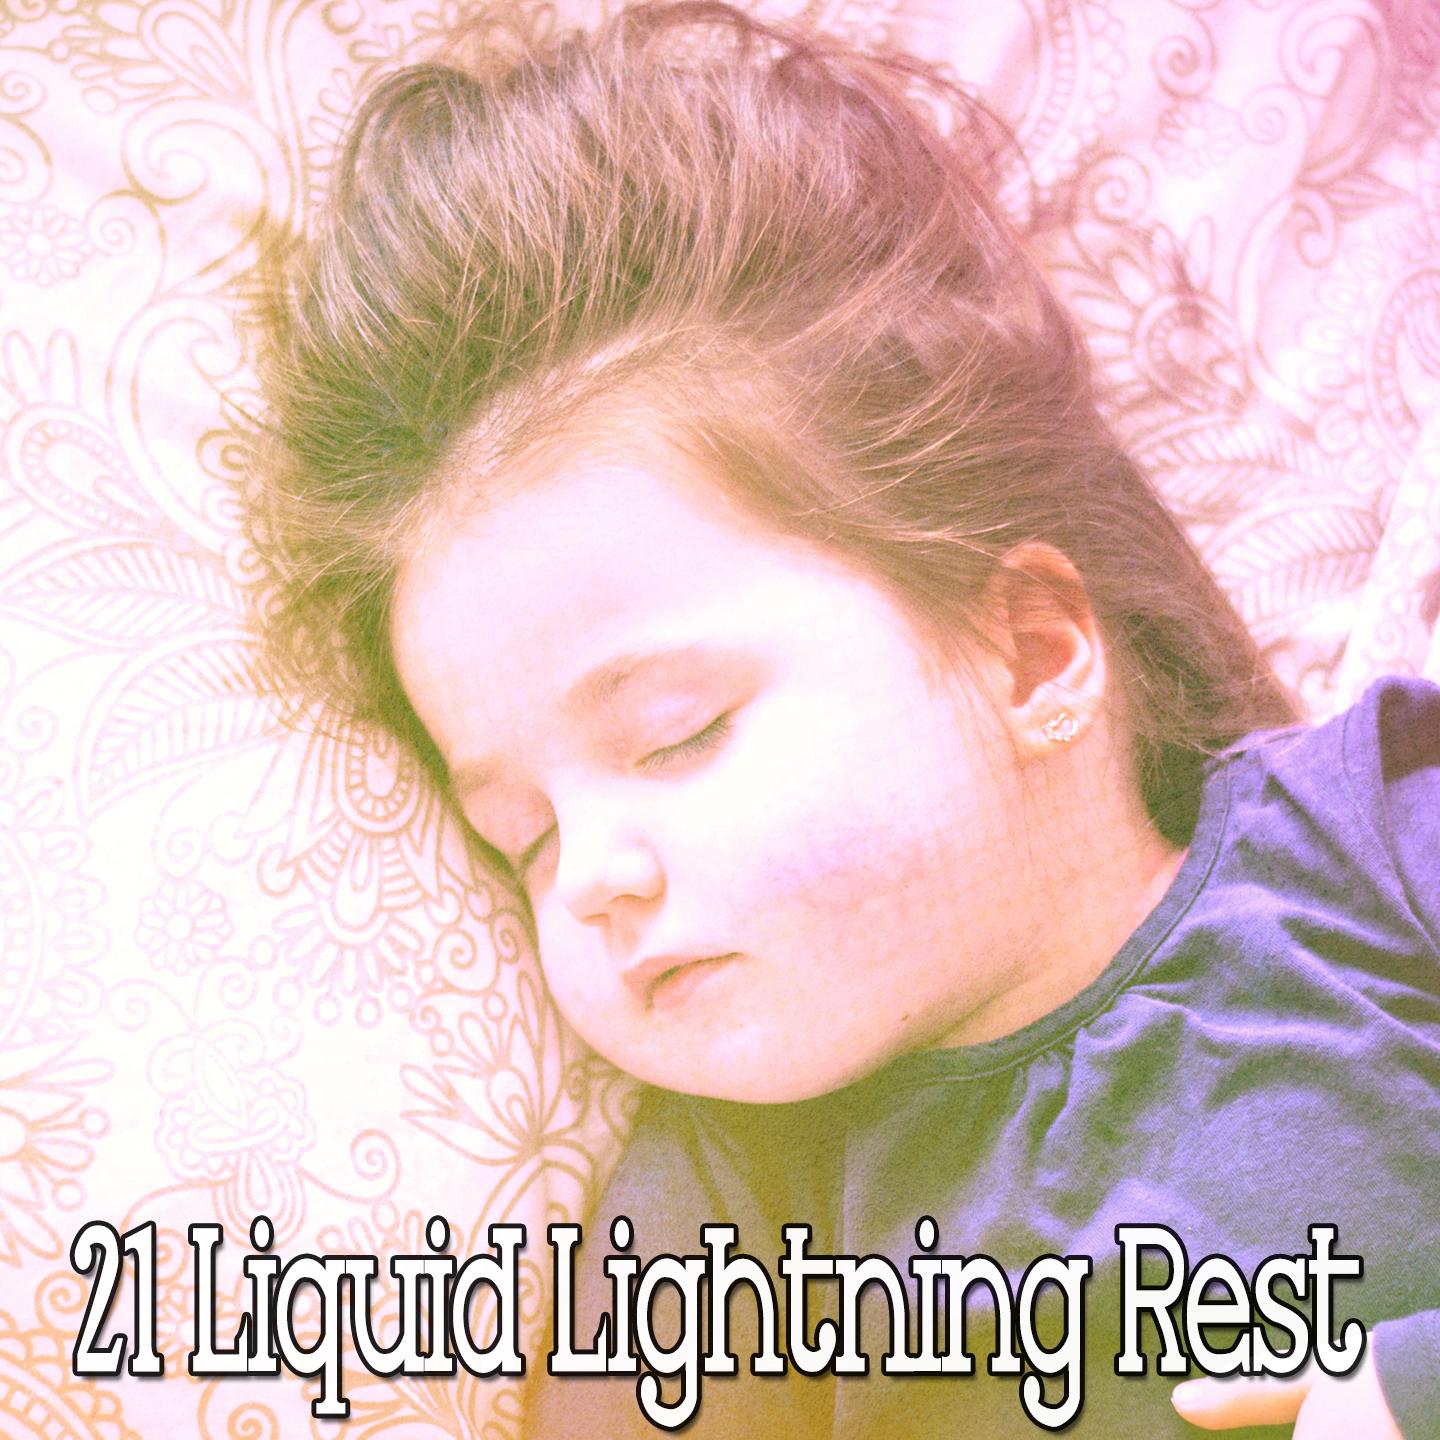 21 Liquid Lightning Rest